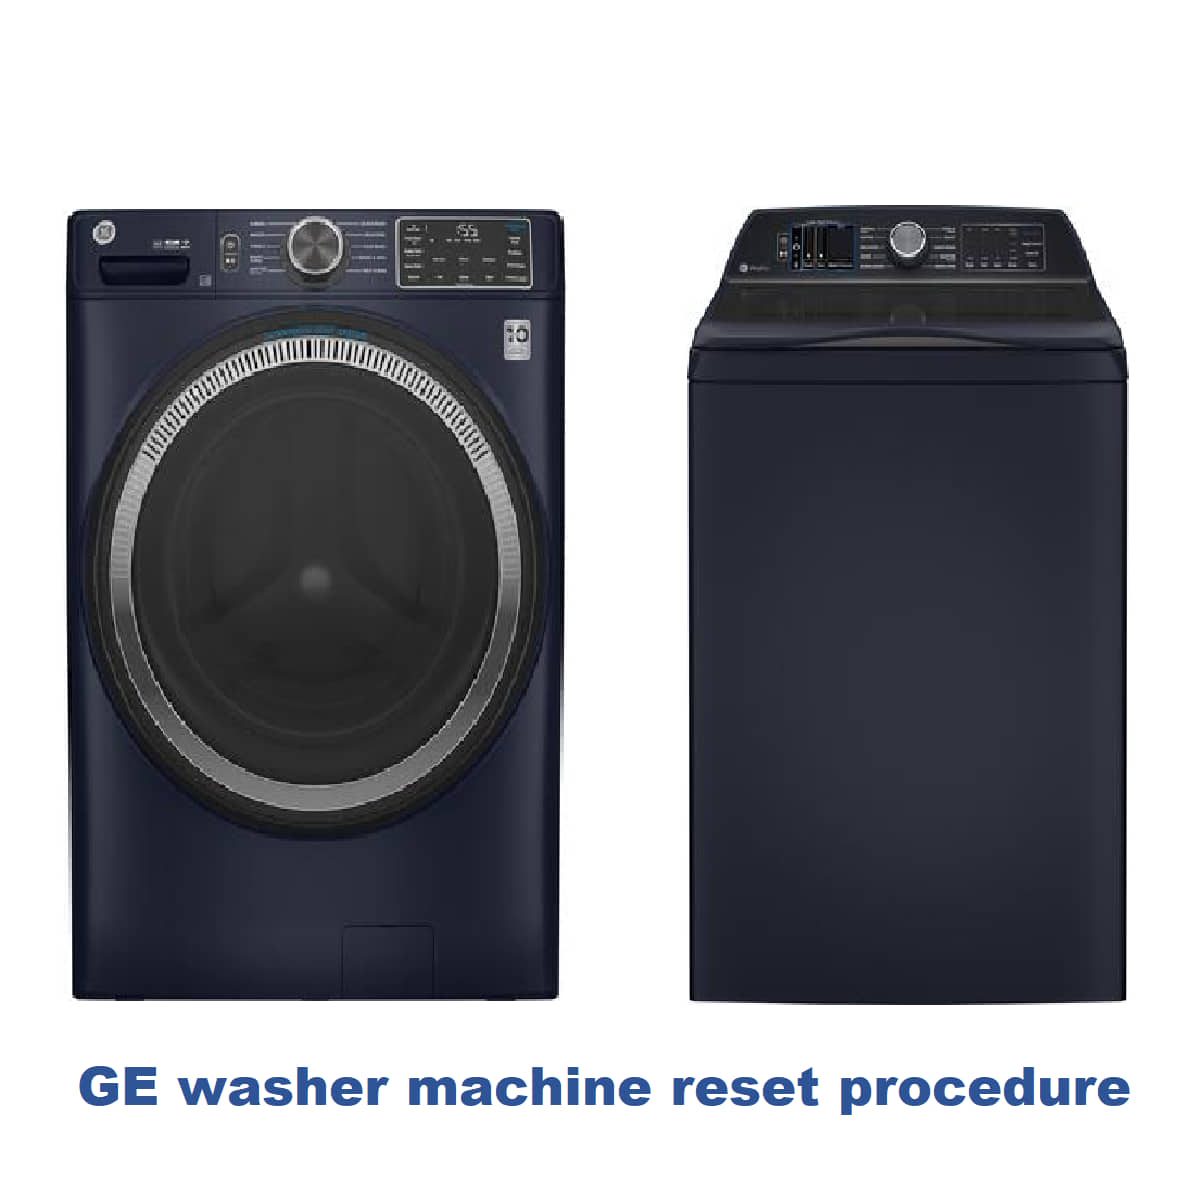 GE washer machine reset